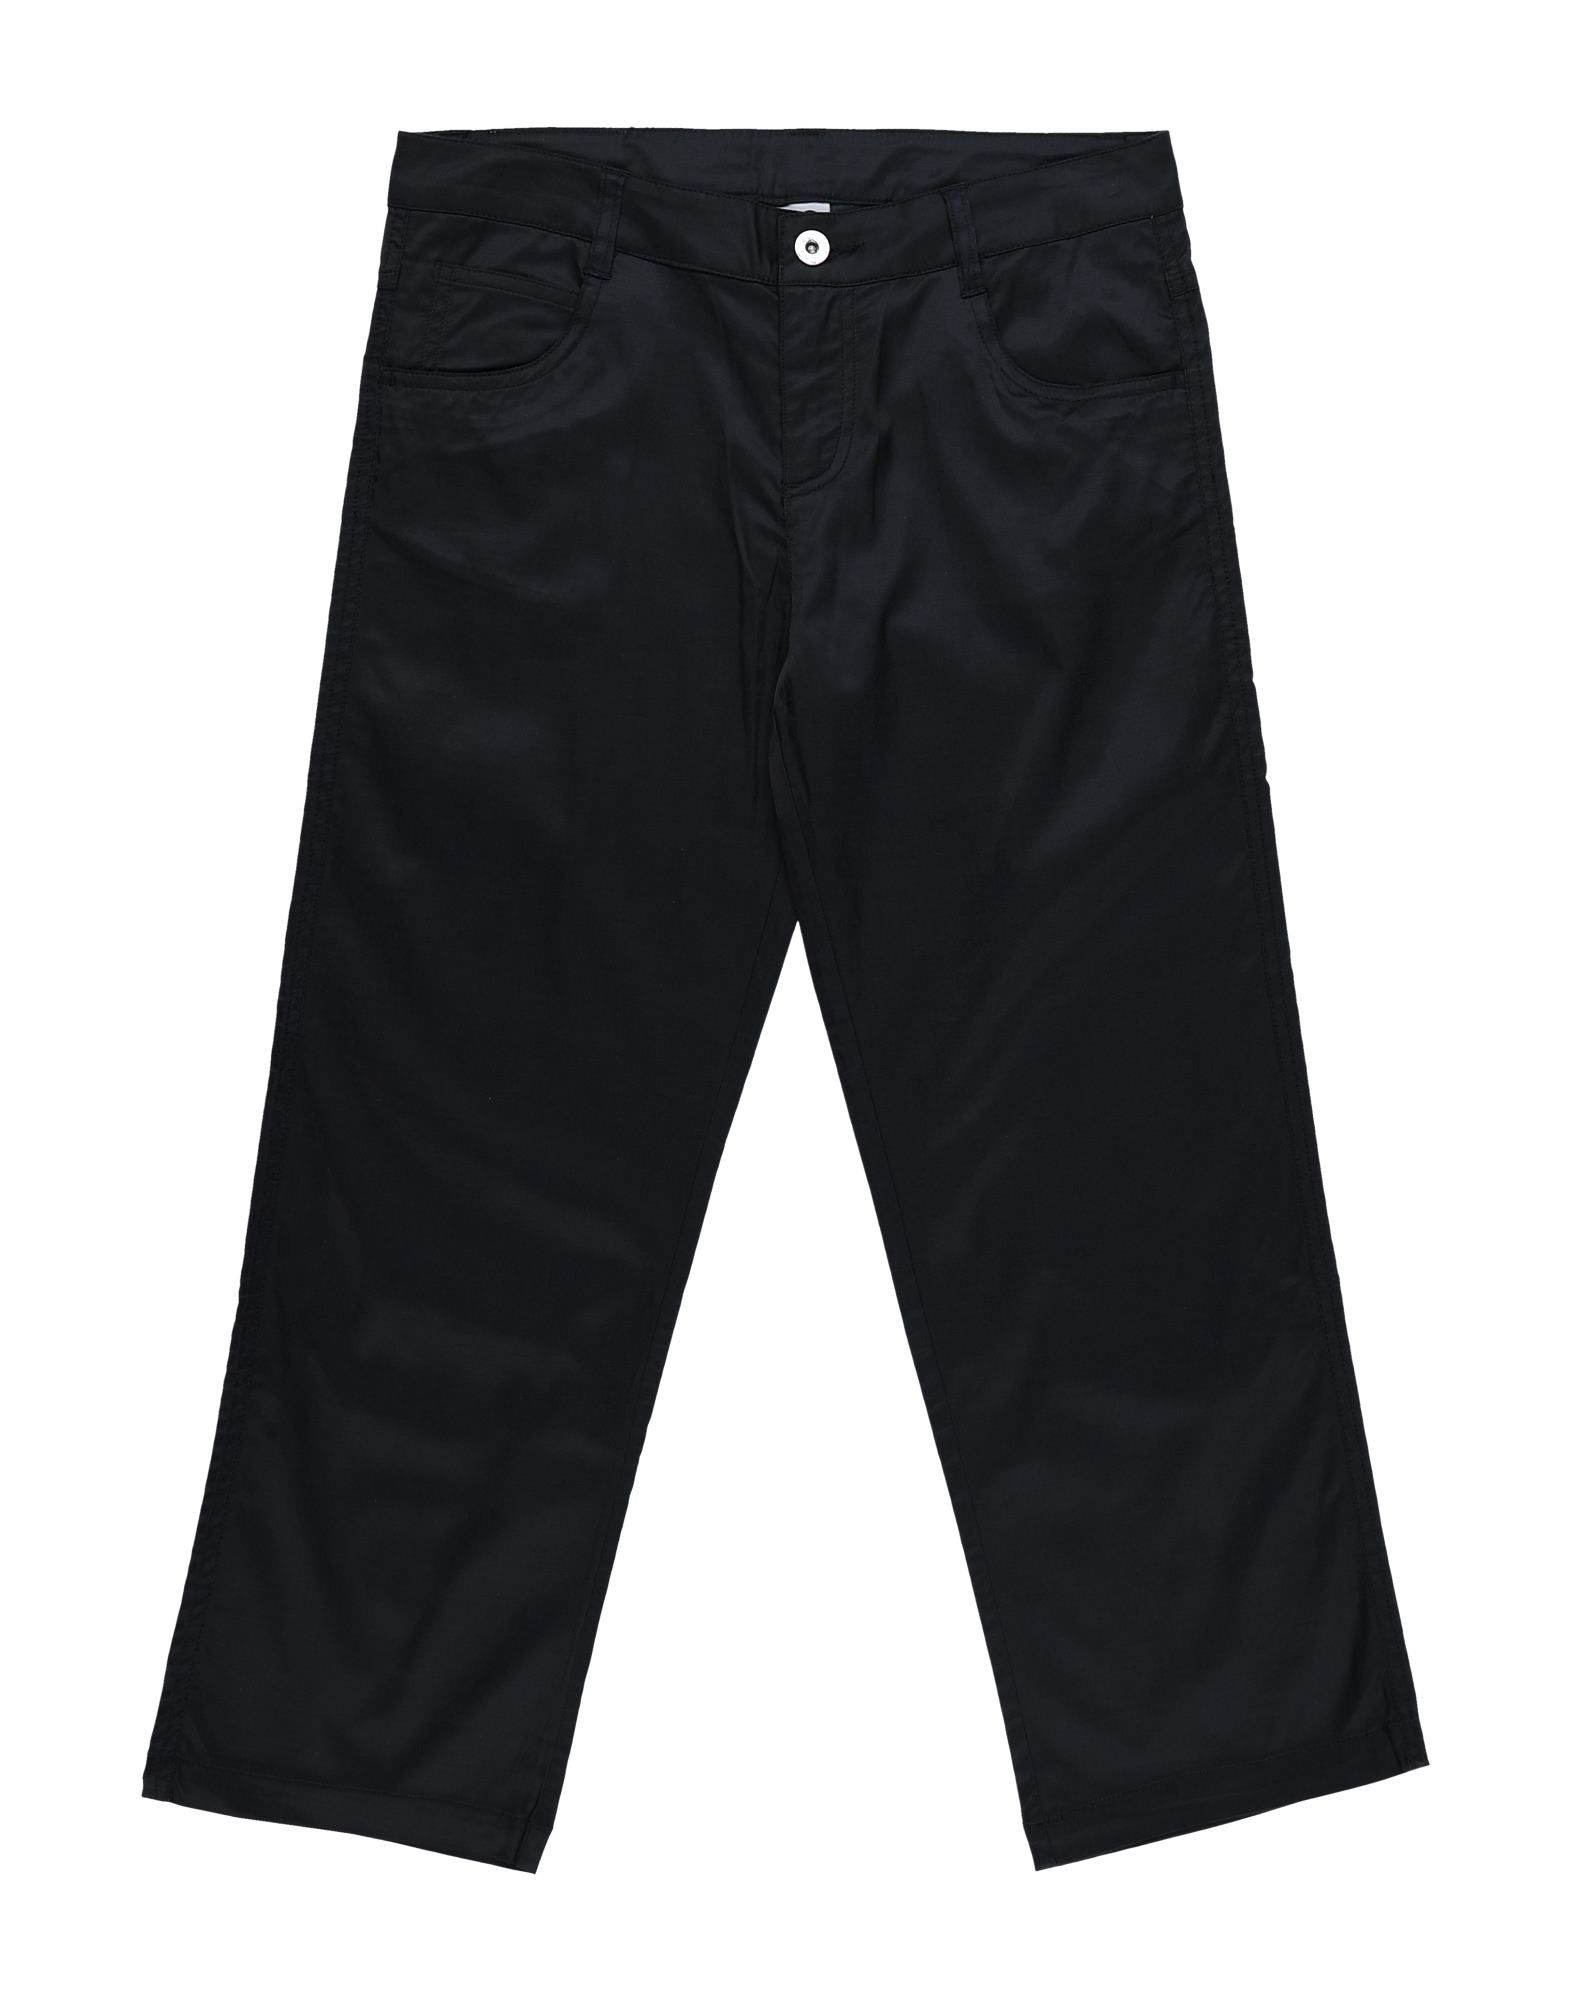 D & G Kids' Casual Pants In Dark Blue